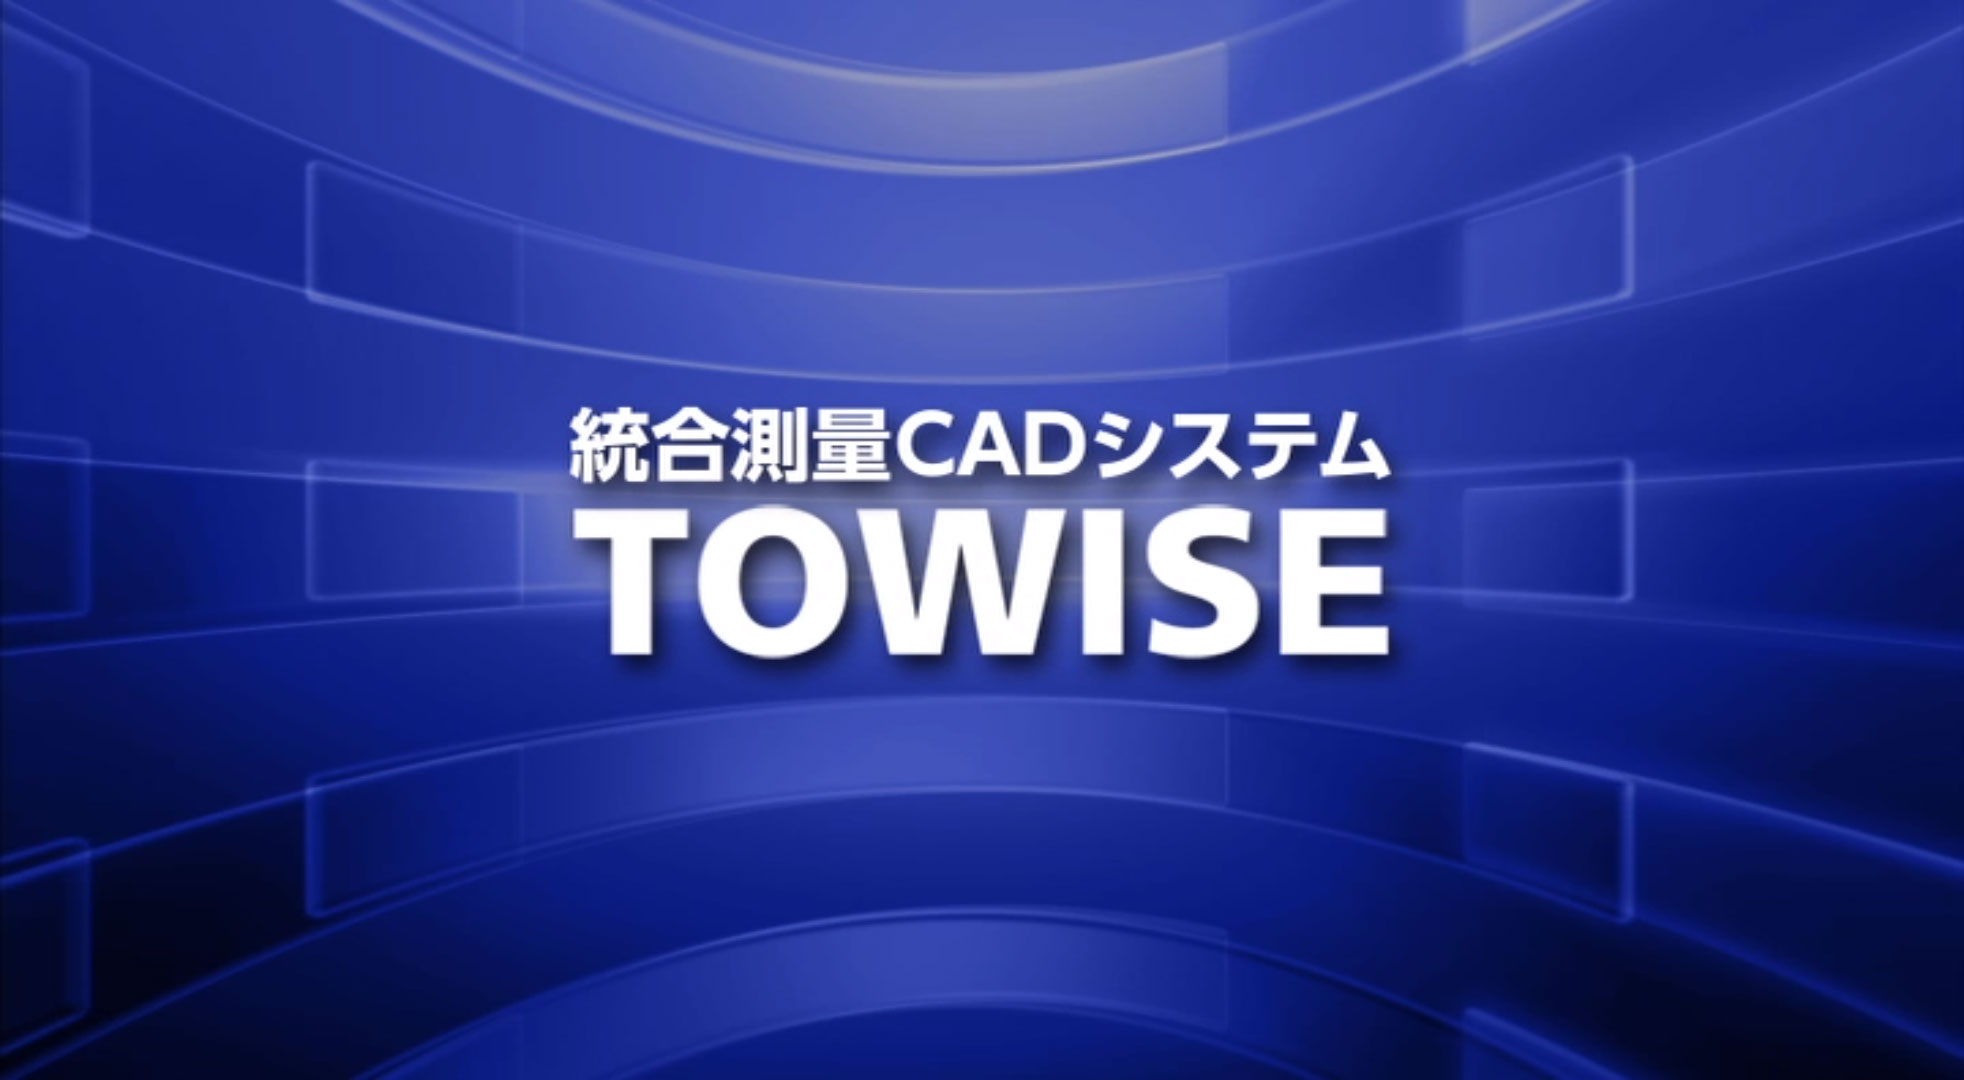 TOWISE 紹介ビデオ